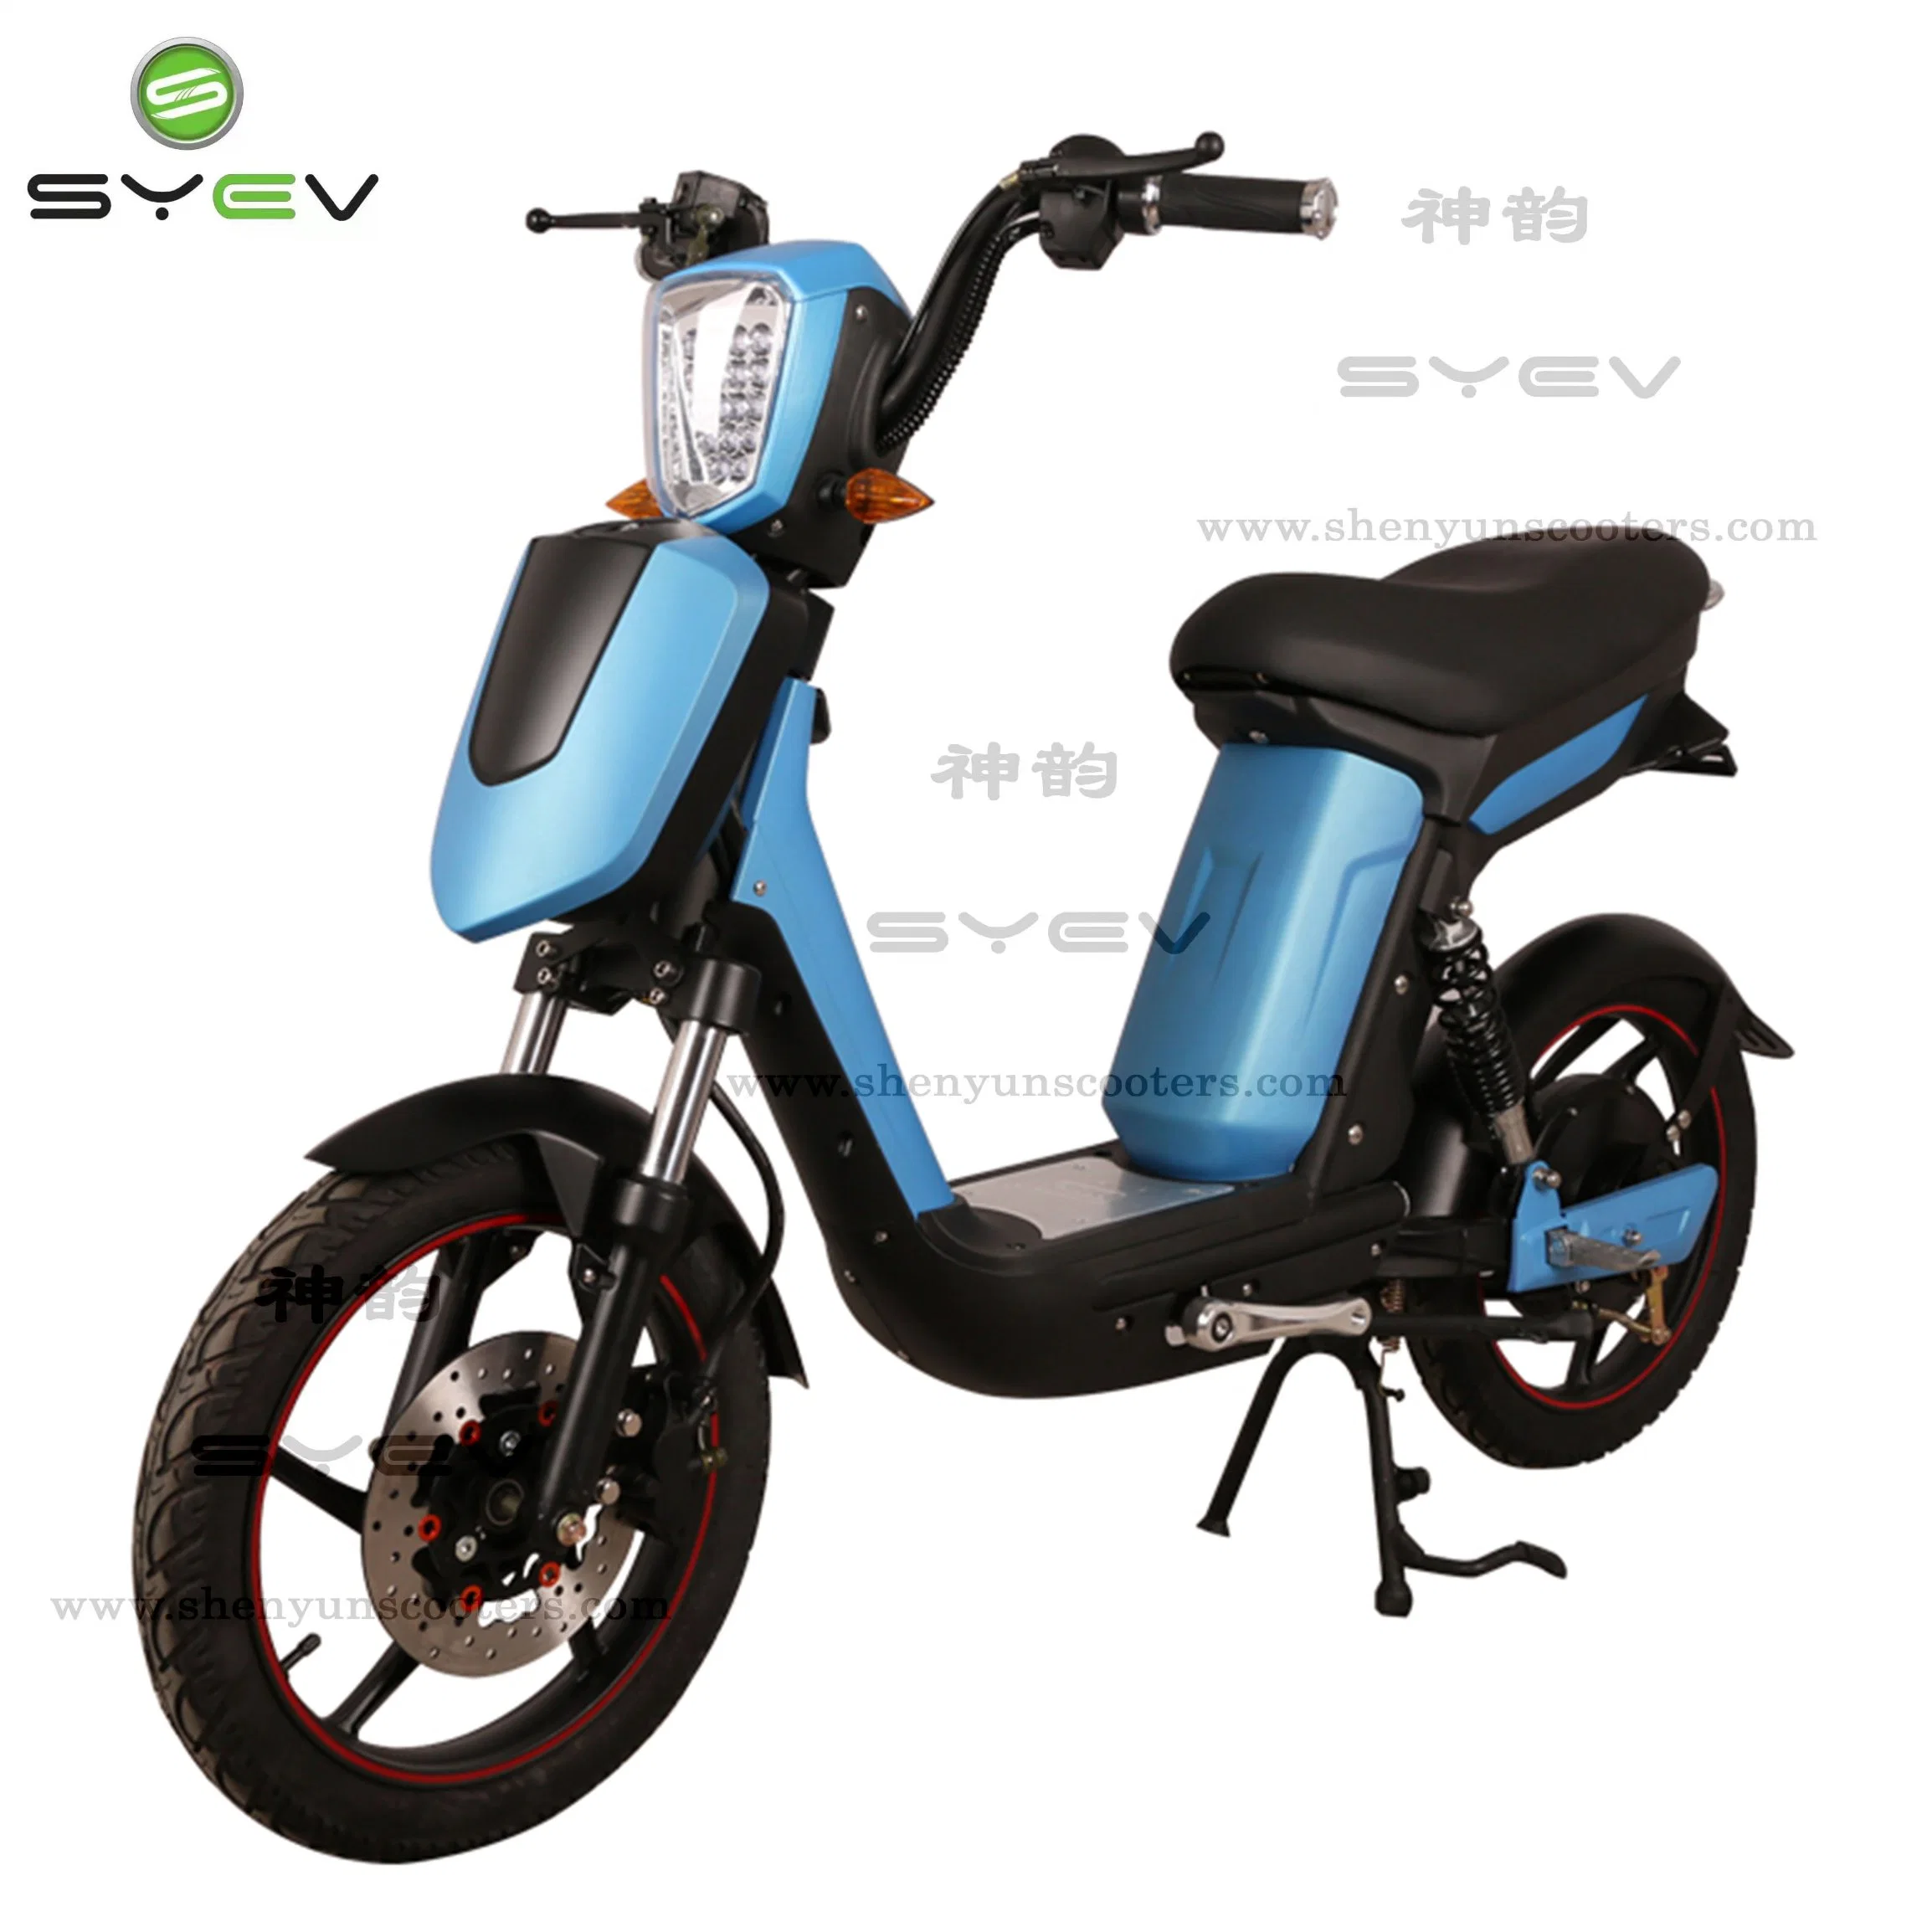 Syev preço barato qualidade de qualidade 500W / 800W BLDC motor chinês Electric Moto de scooter com travões de disco/tambor